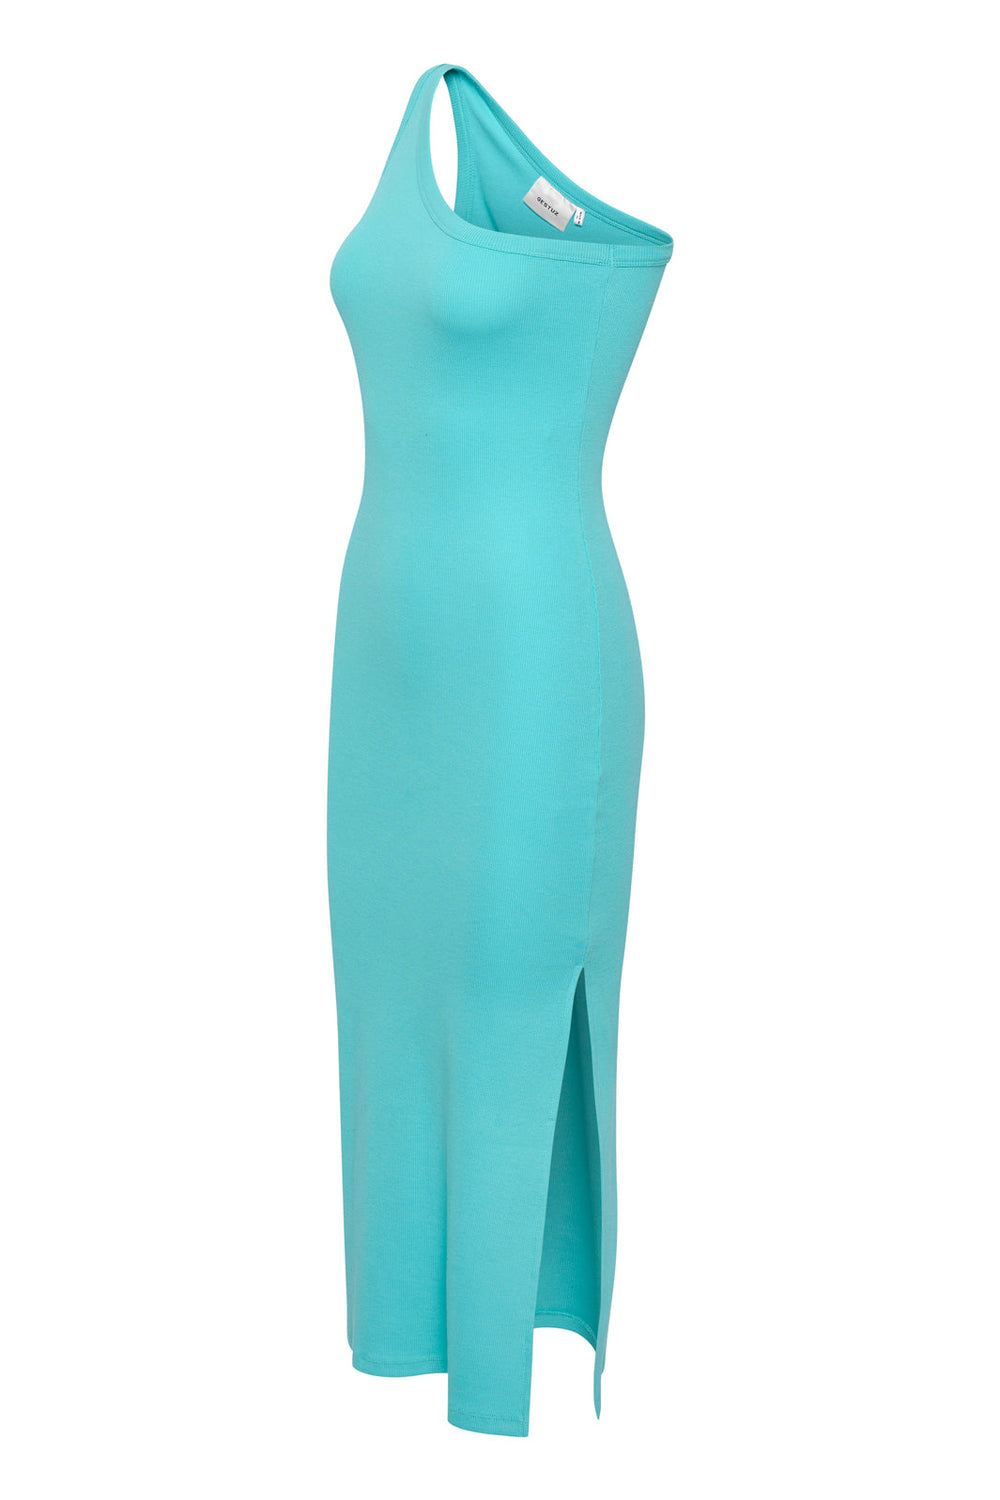 Gestuz - Drewgz One Shoulder Dress - Blue Turquoise Kjoler 